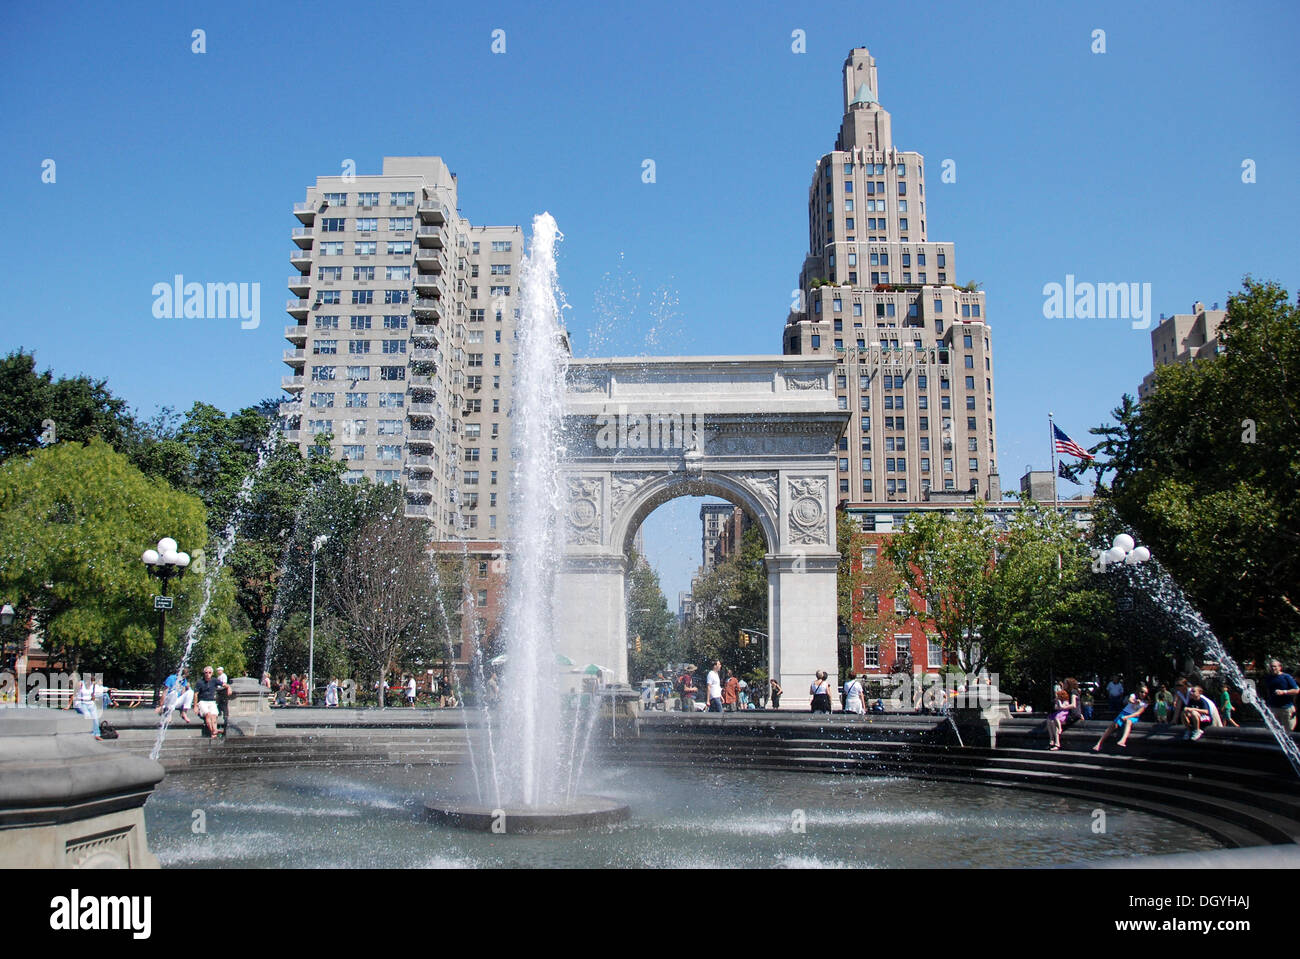 Fontaine et de triomphe, Washington Square Park, Greenwich Village, new york city, New York, USA, Amérique du Nord Banque D'Images